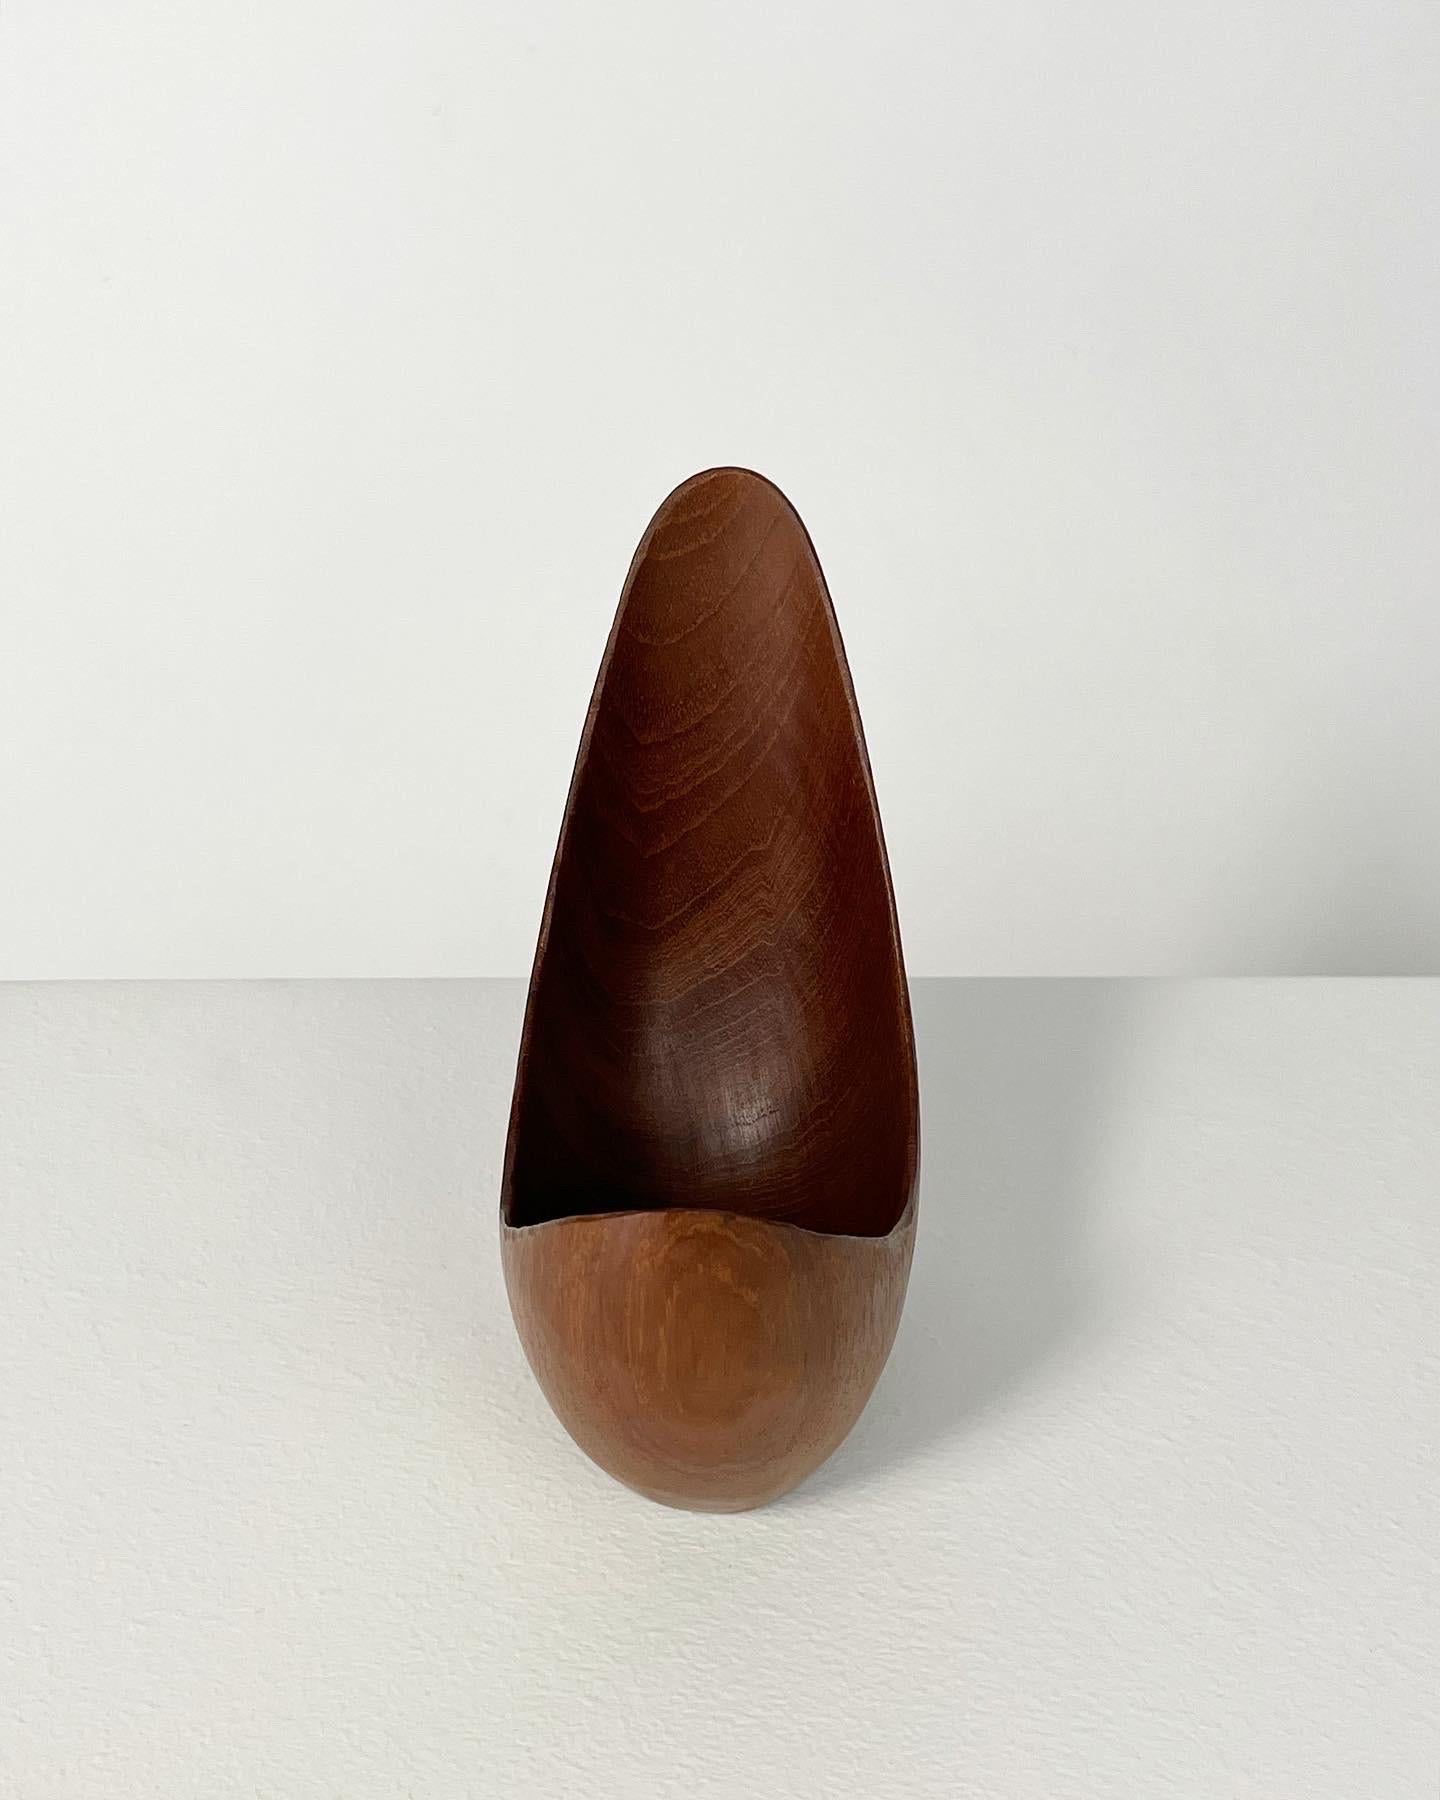 Stig Sandkvist Teak Bowl Hand Carved Sweden 1950s Midcentury Design In Good Condition In Basel, BS